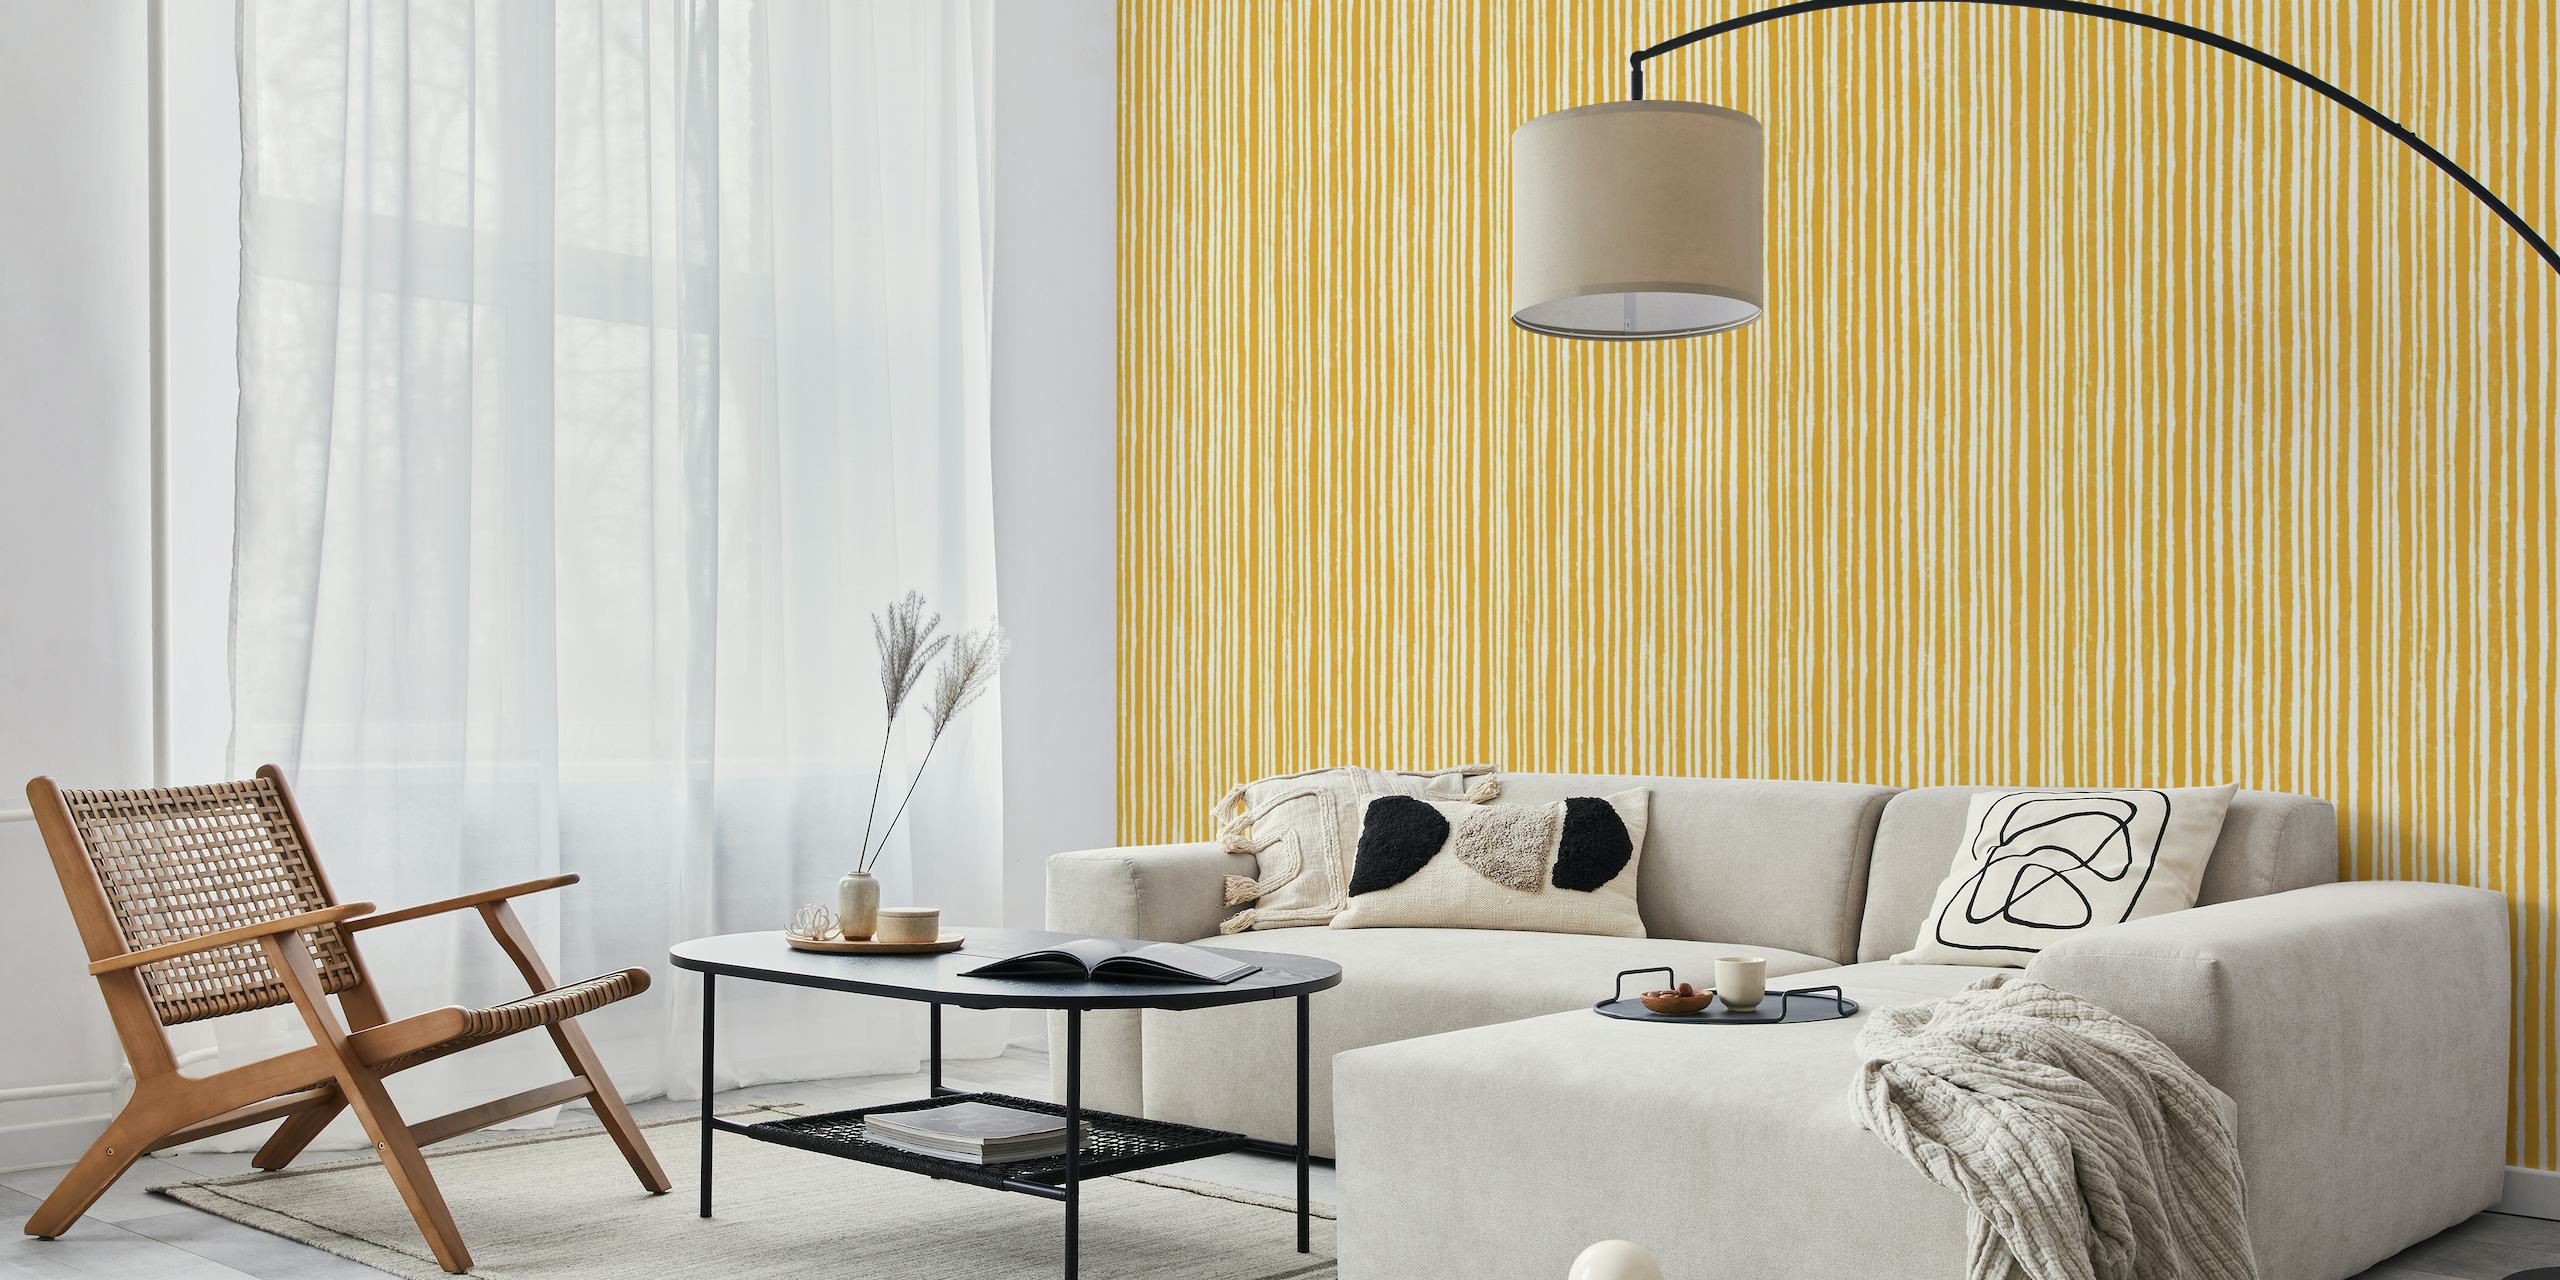 Vertical & Textured Stripes - Mustard Yellow wallpaper